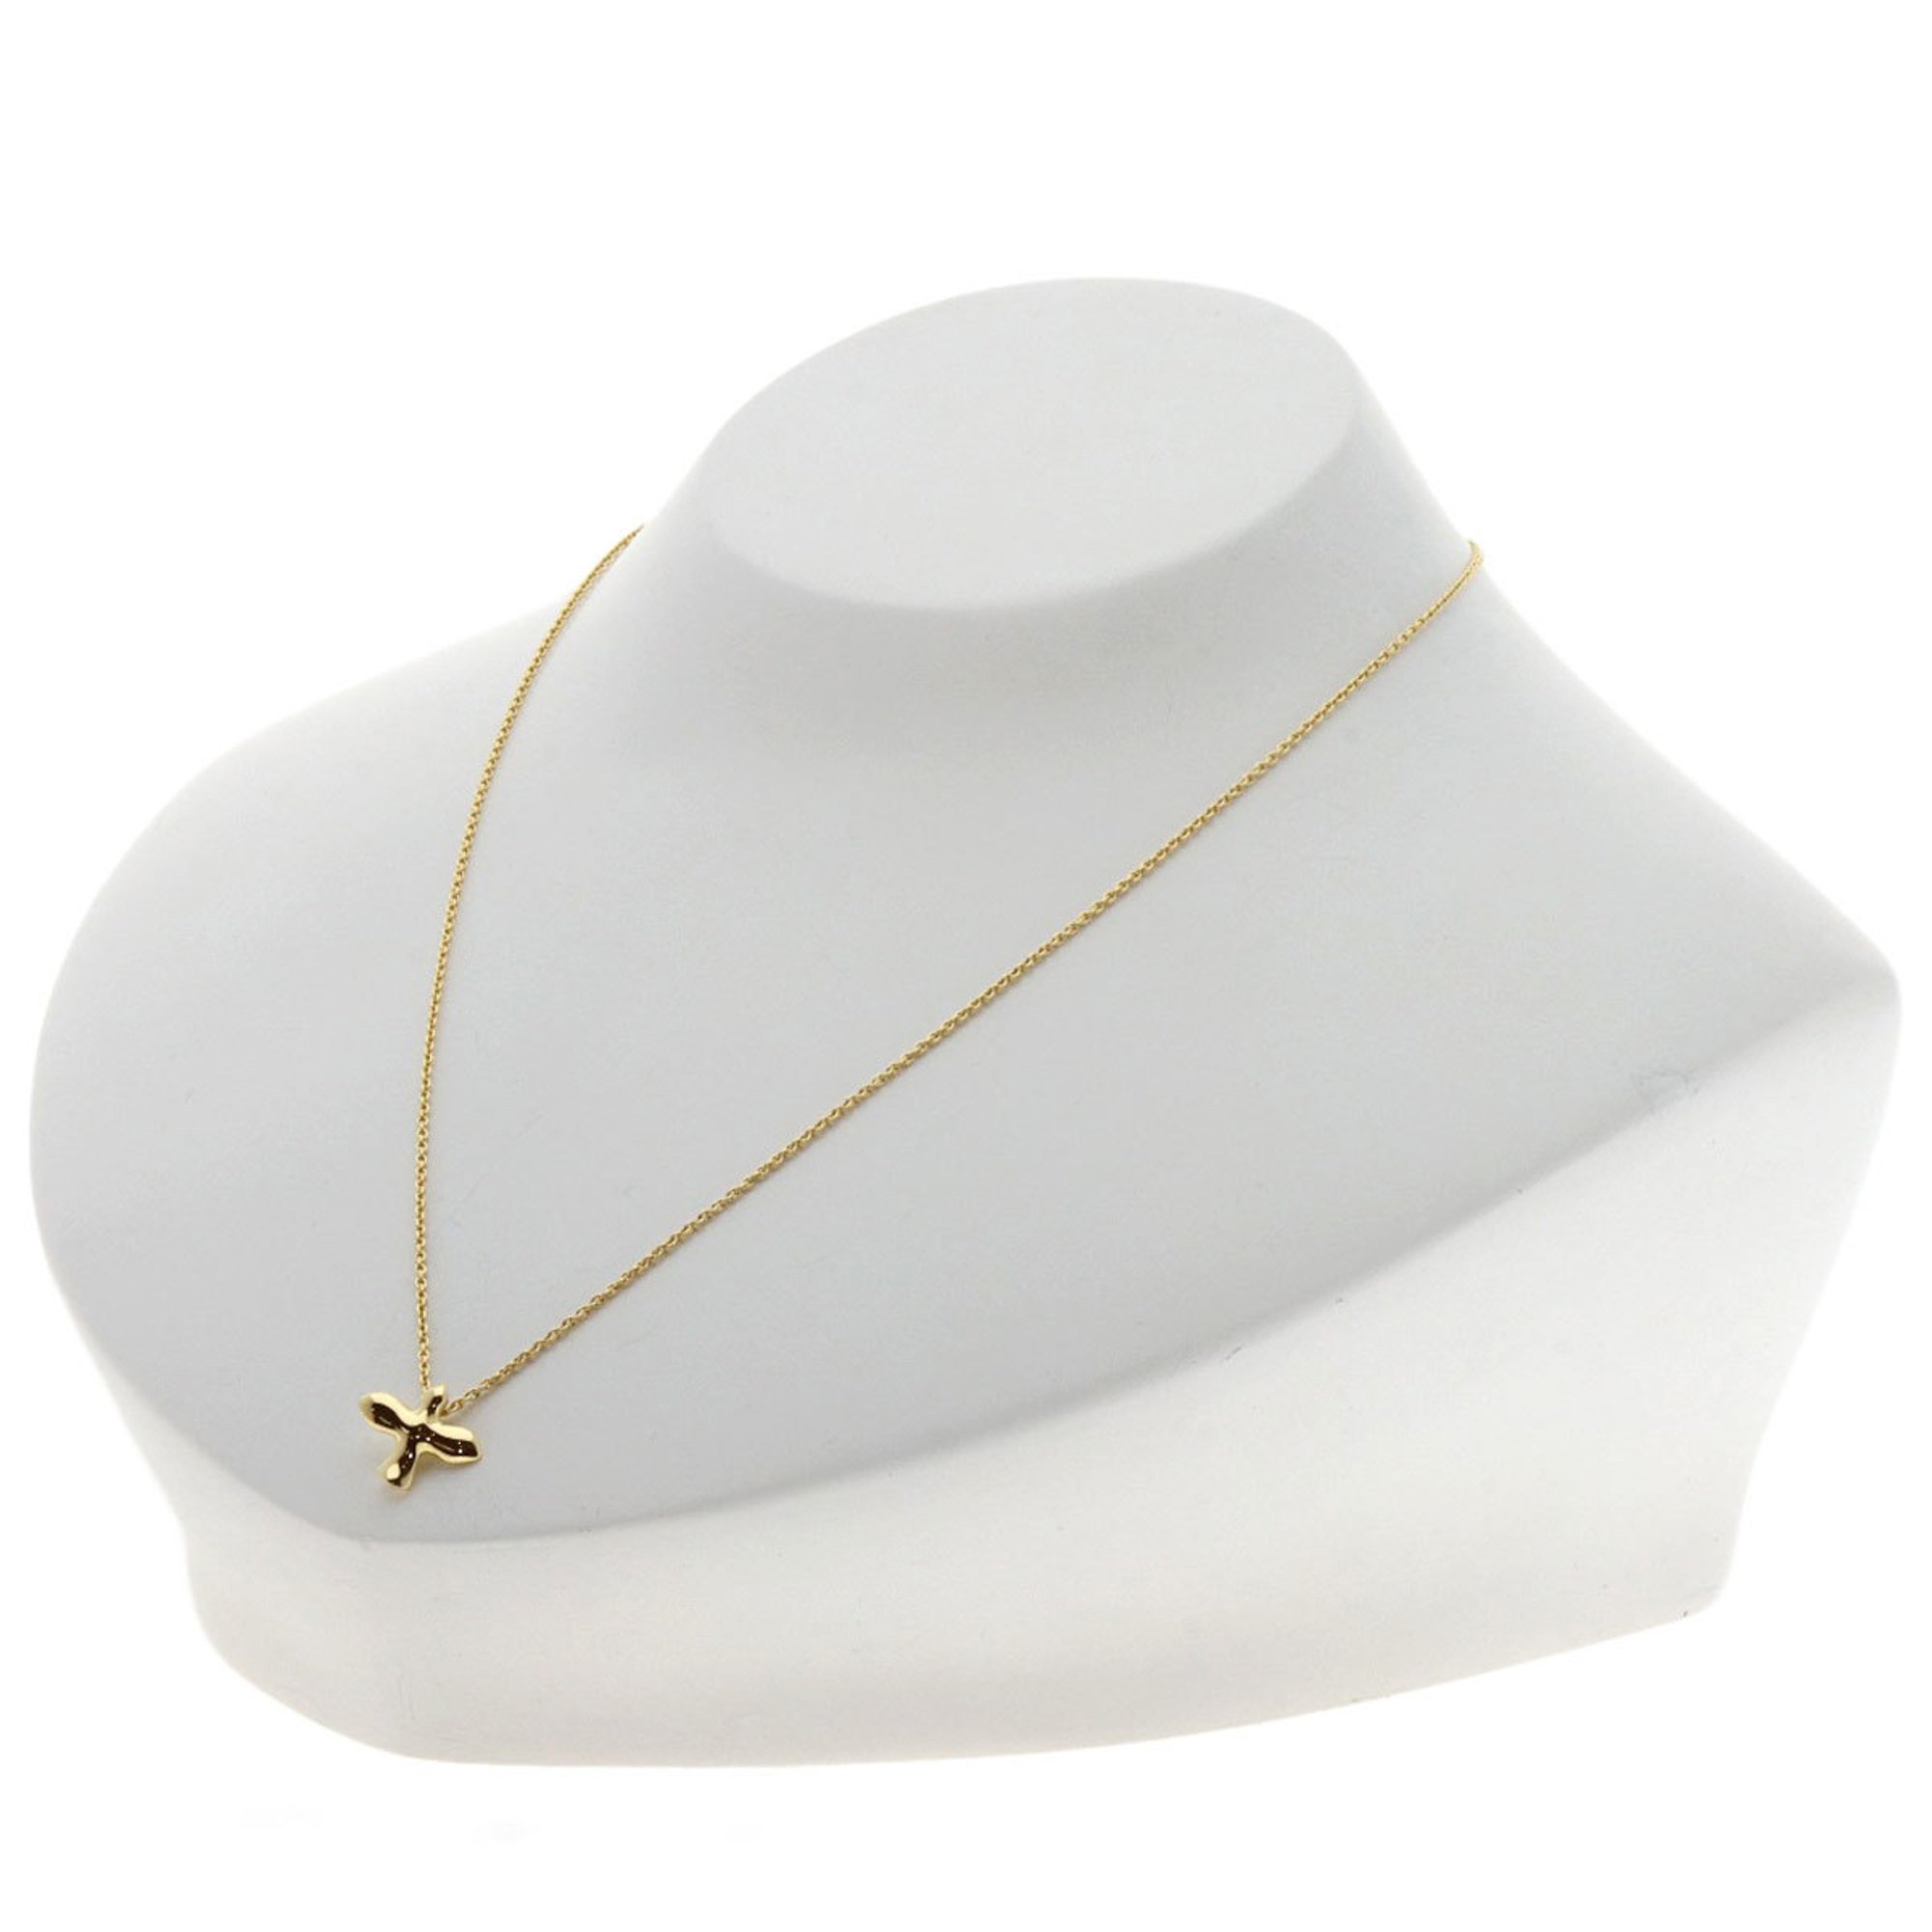 Tiffany Bird Cross Necklace, 18K Yellow Gold, Women's, TIFFANY&Co.